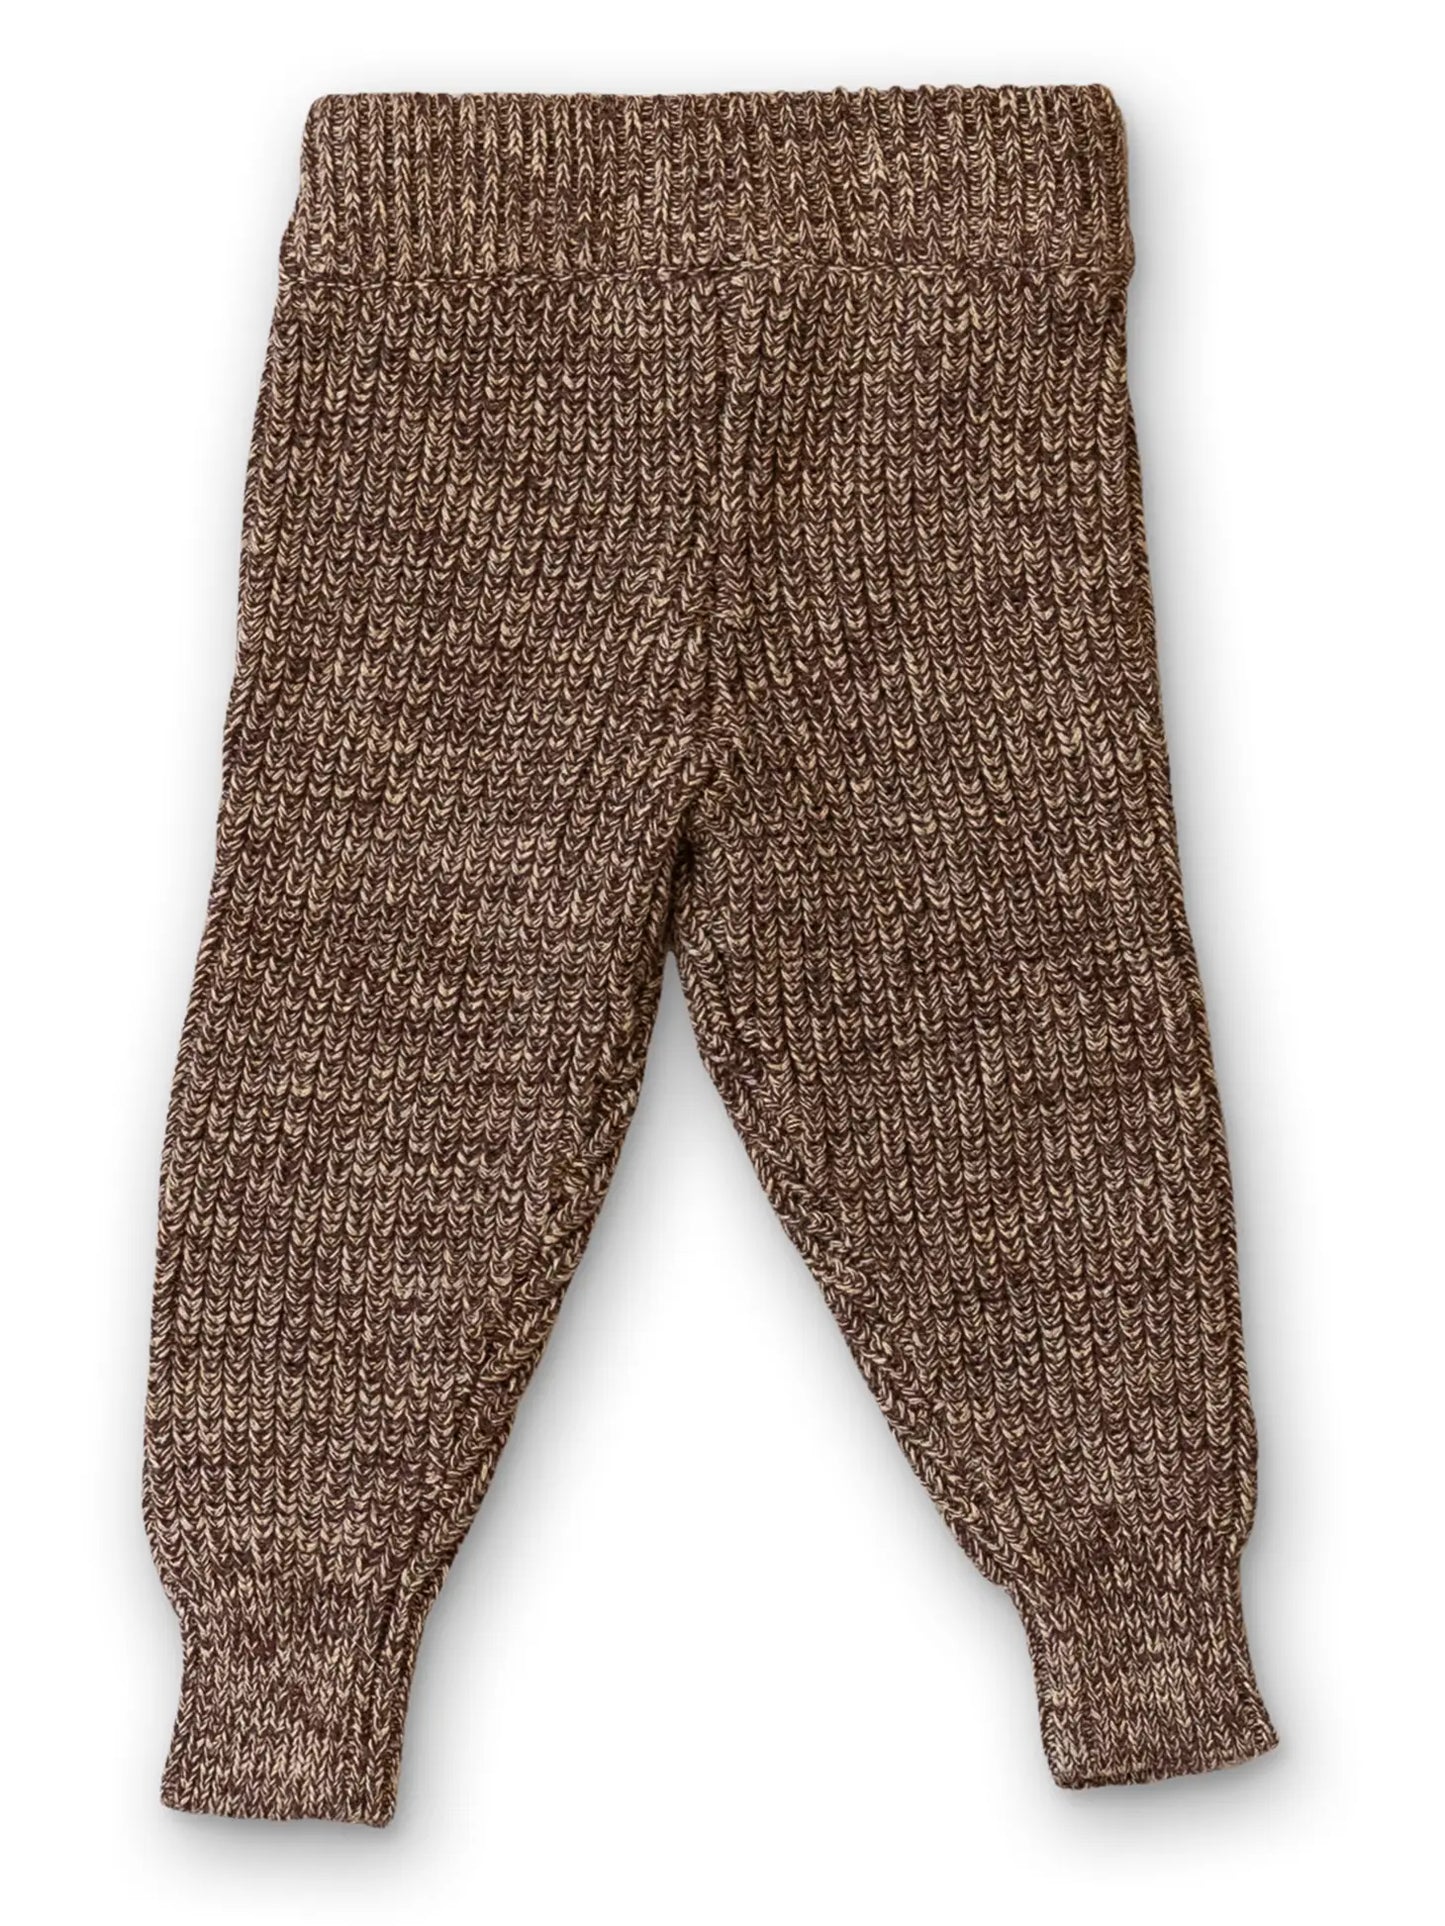 Cotton Kids Knit Pants - Bark - Lulie